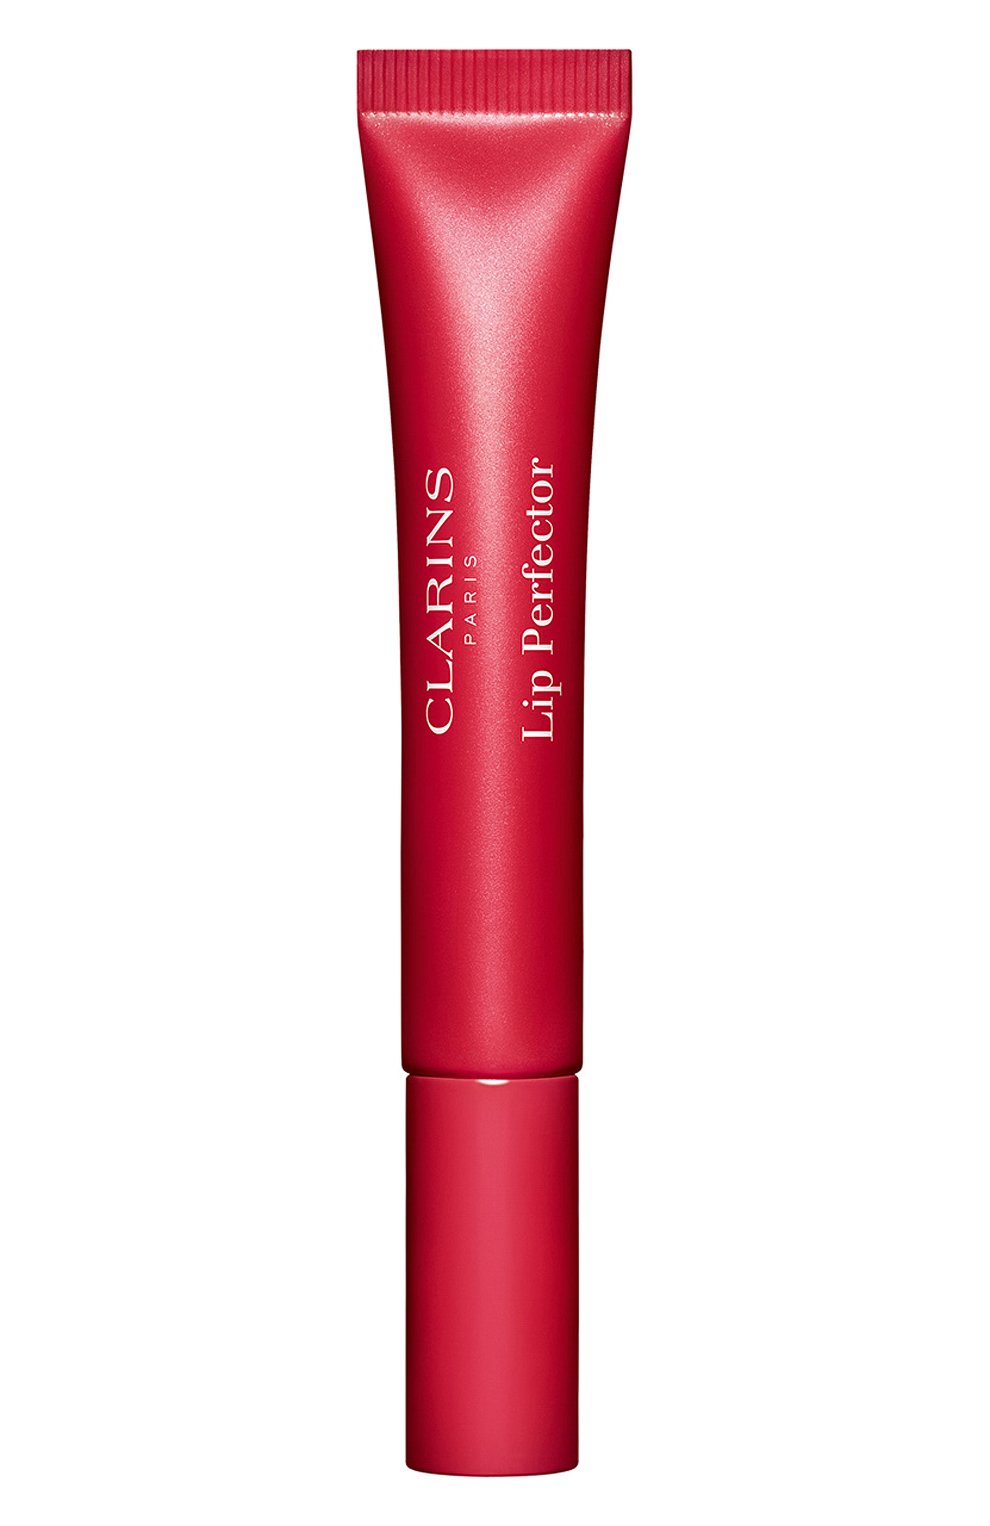 Блеск для губ lip perfector, оттенок 24 fuchsia glow (12ml) CLARINS  цвета, арт. 80098706 | Фото 1 (Обьем косметики: 100ml; Финишное покрытие: Блестящий)